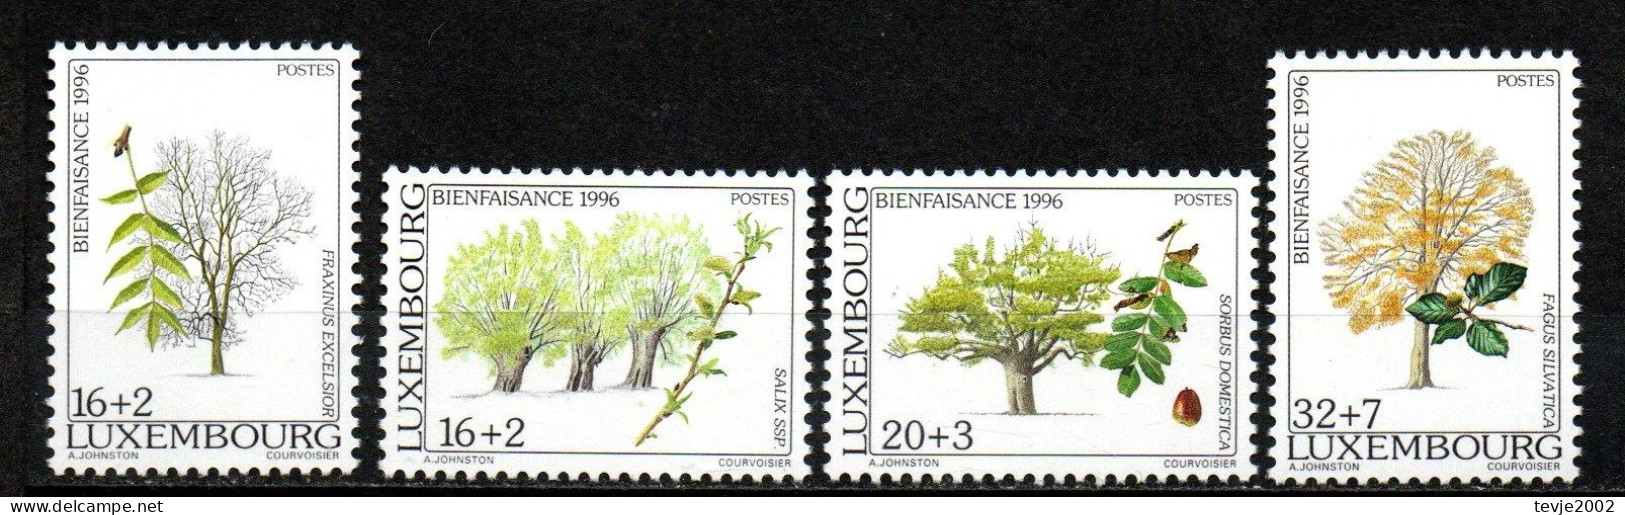 Luxemburg 1996 - Mi.Nr. 1404 - 1407 - Postfrisch MNH - Bäume Trees - Arbres